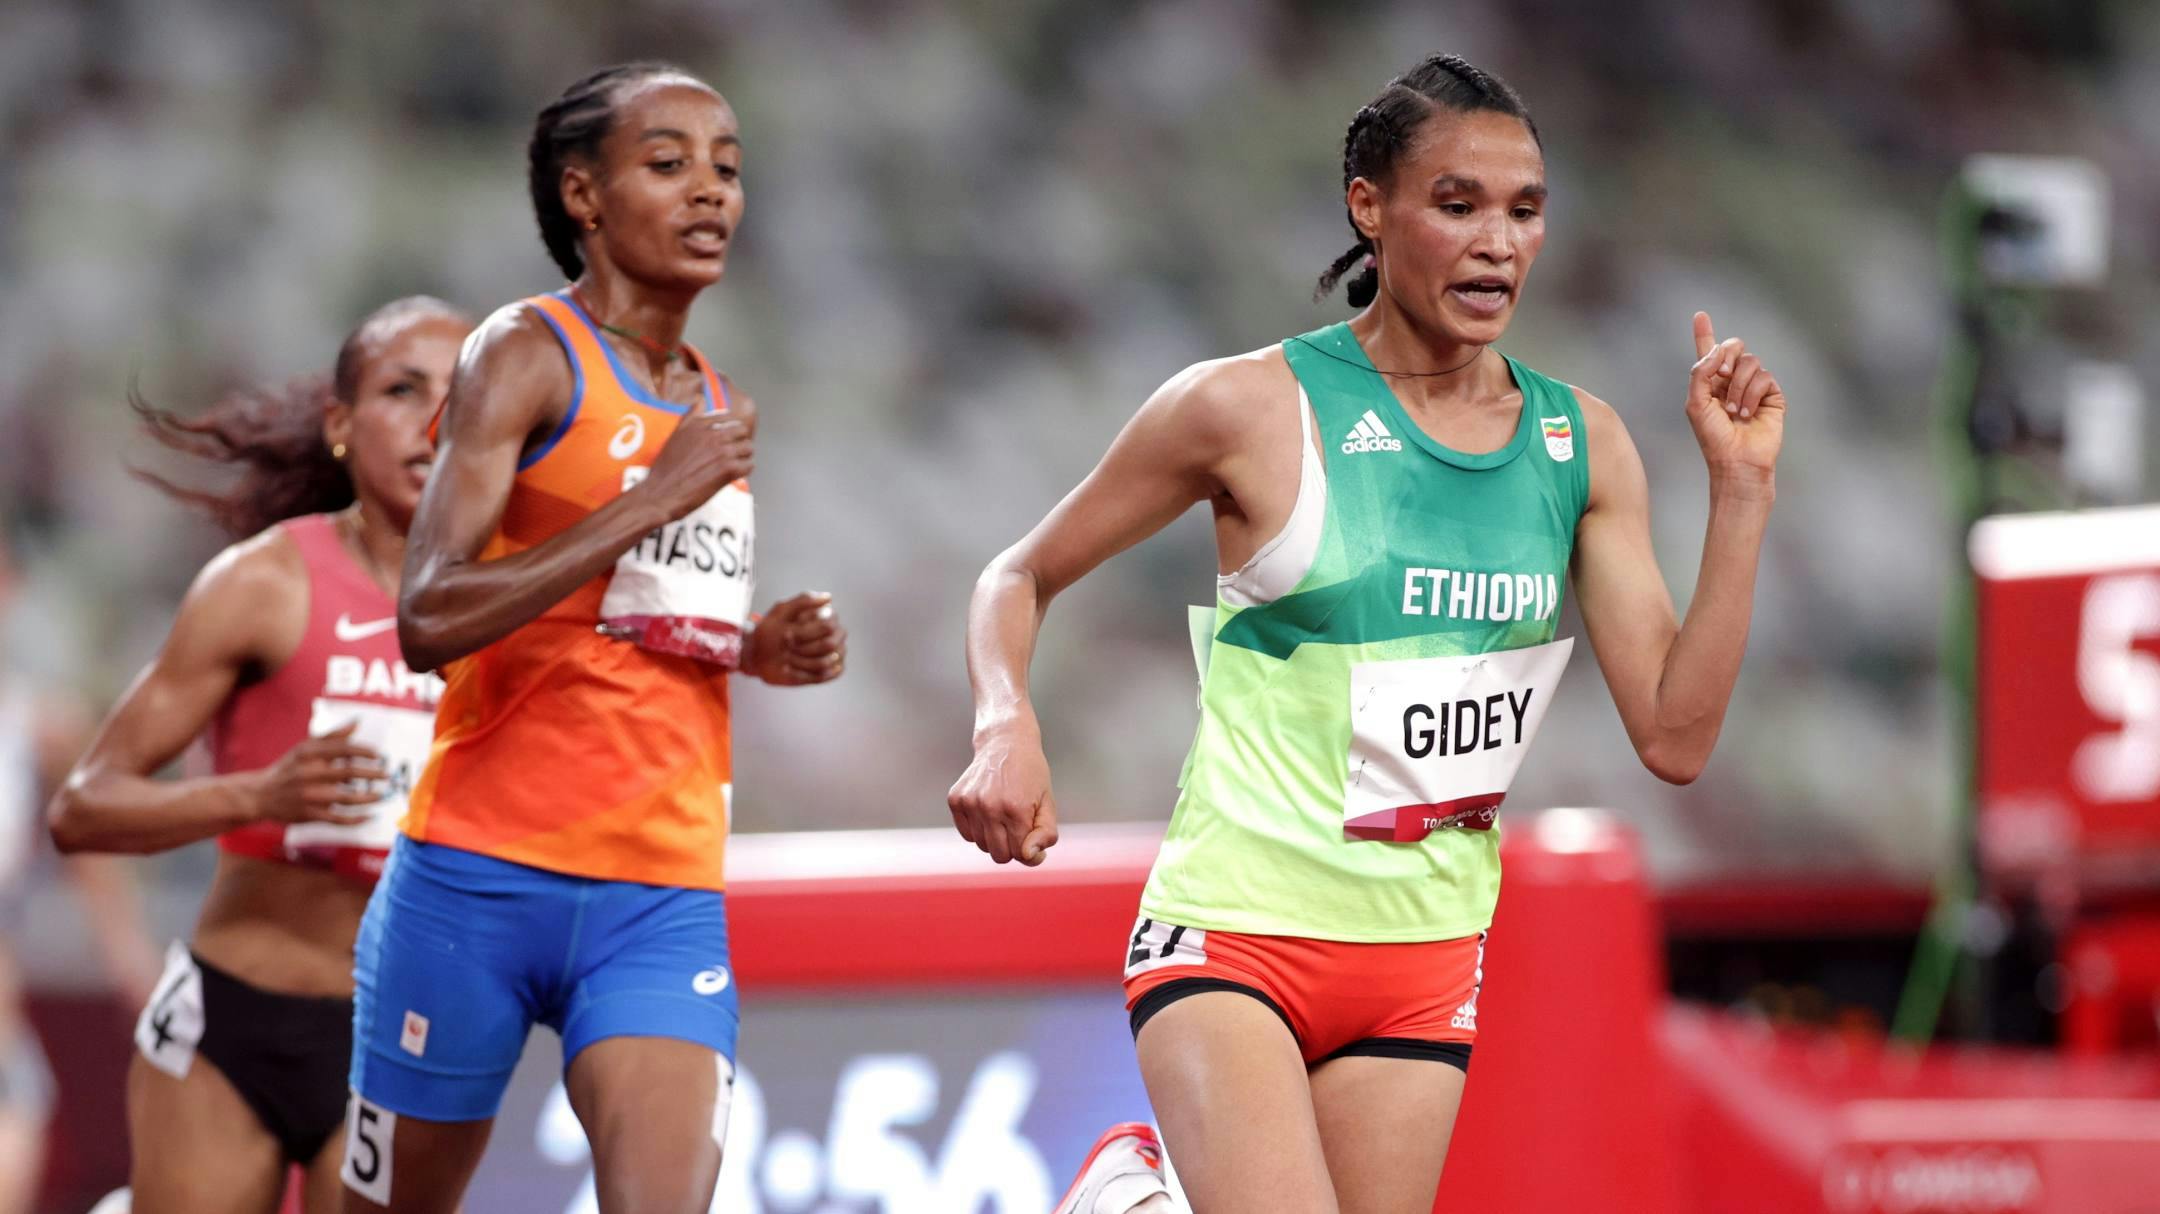 Παγκόσμιο πρωτάθλημα: Η απουσία της Obiri αφήνει περιθώρια για εκπλήξεις στα 5.000μ. γυναικών